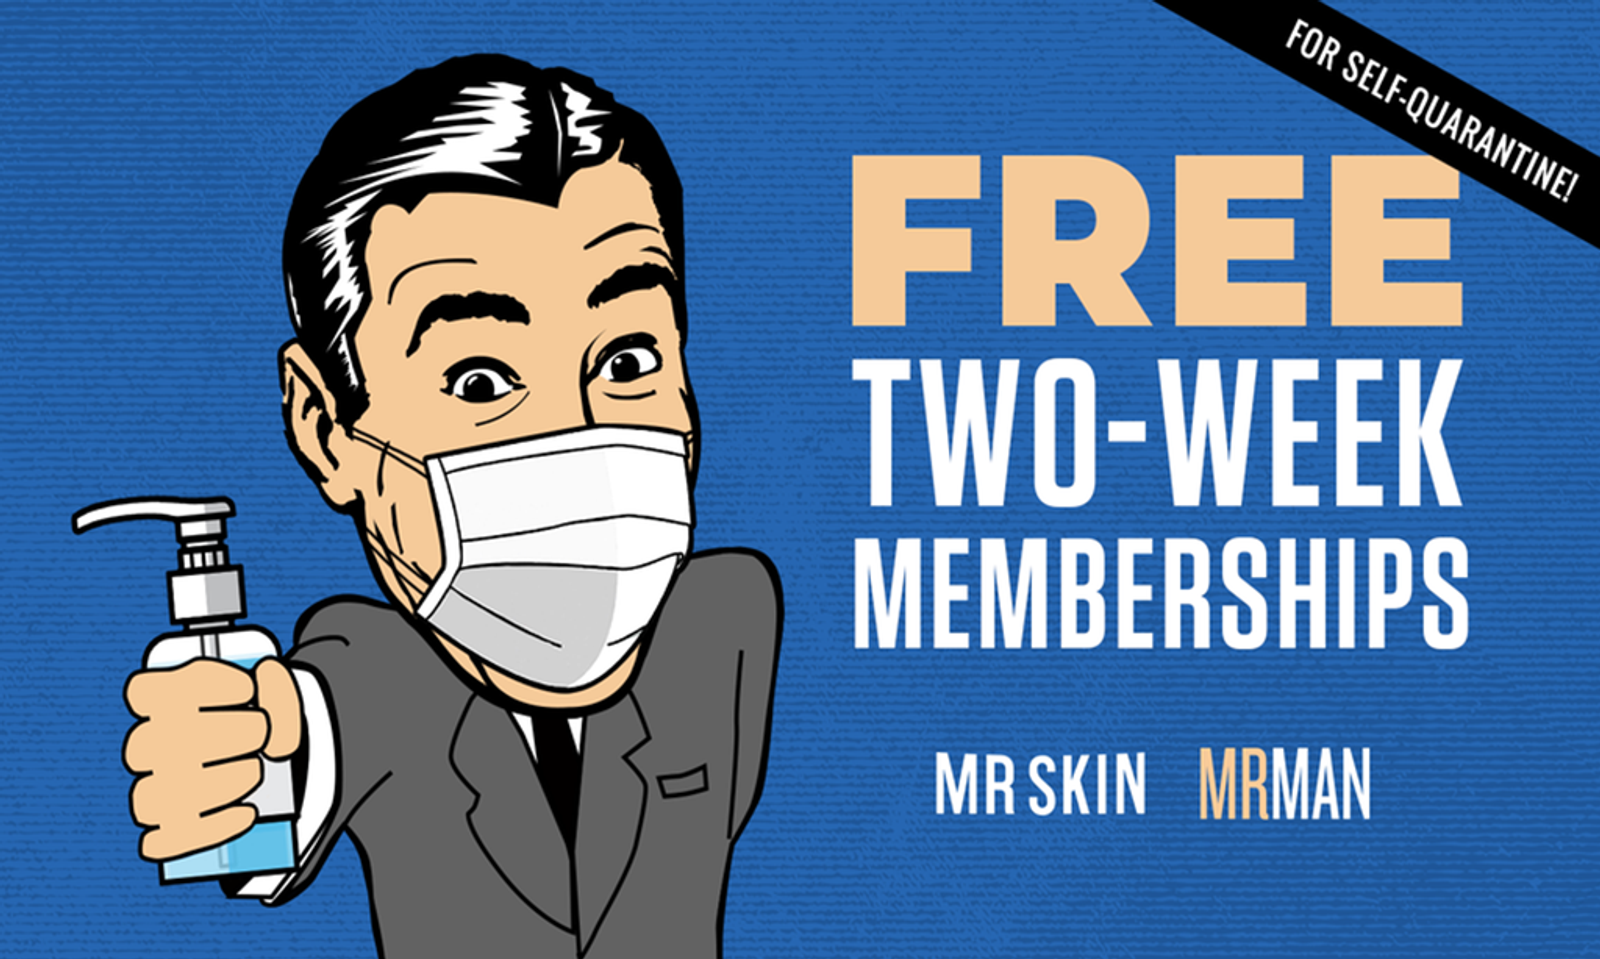 Mr. Skin, Mr. Man Offer Free 2-Week Memberships During Quarantine